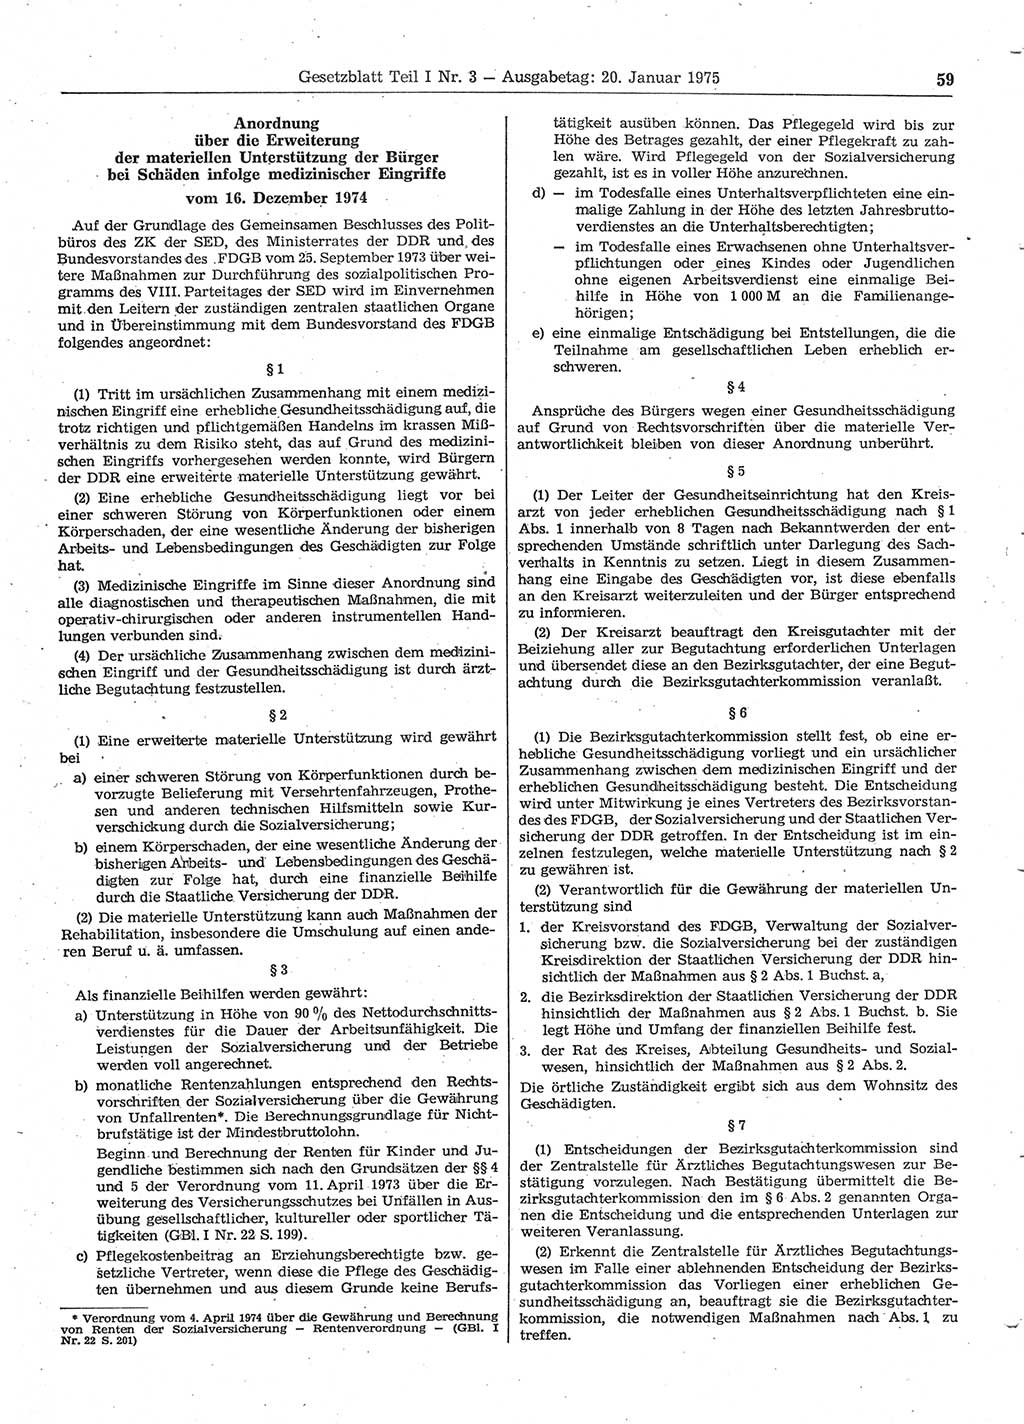 Gesetzblatt (GBl.) der Deutschen Demokratischen Republik (DDR) Teil Ⅰ 1975, Seite 59 (GBl. DDR Ⅰ 1975, S. 59)